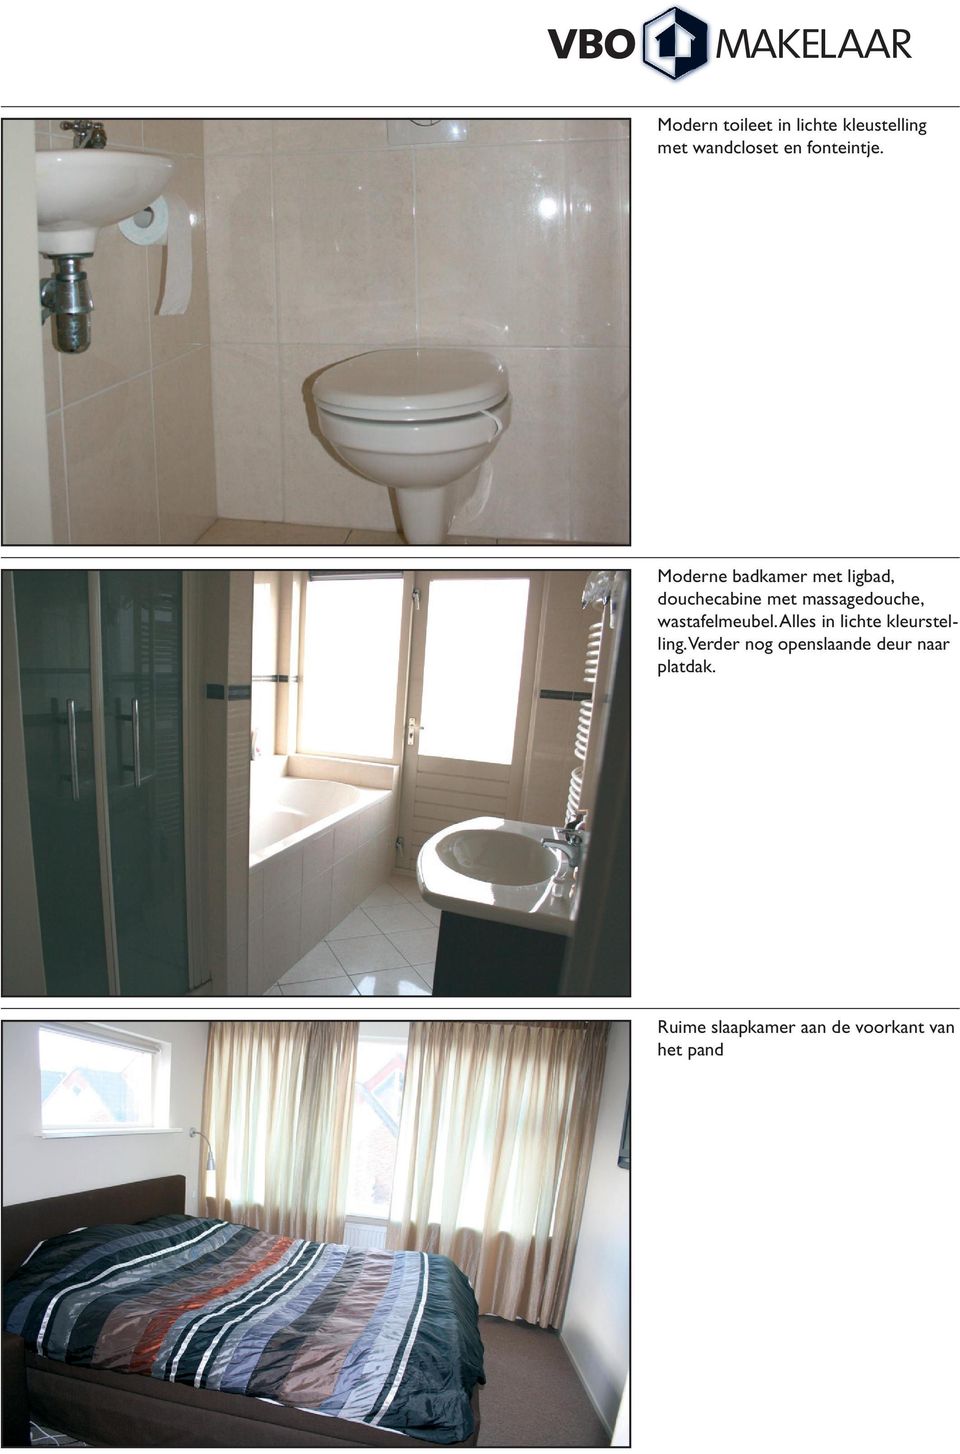 Moderne badkamer met ligbad, douchecabine met massagedouche,